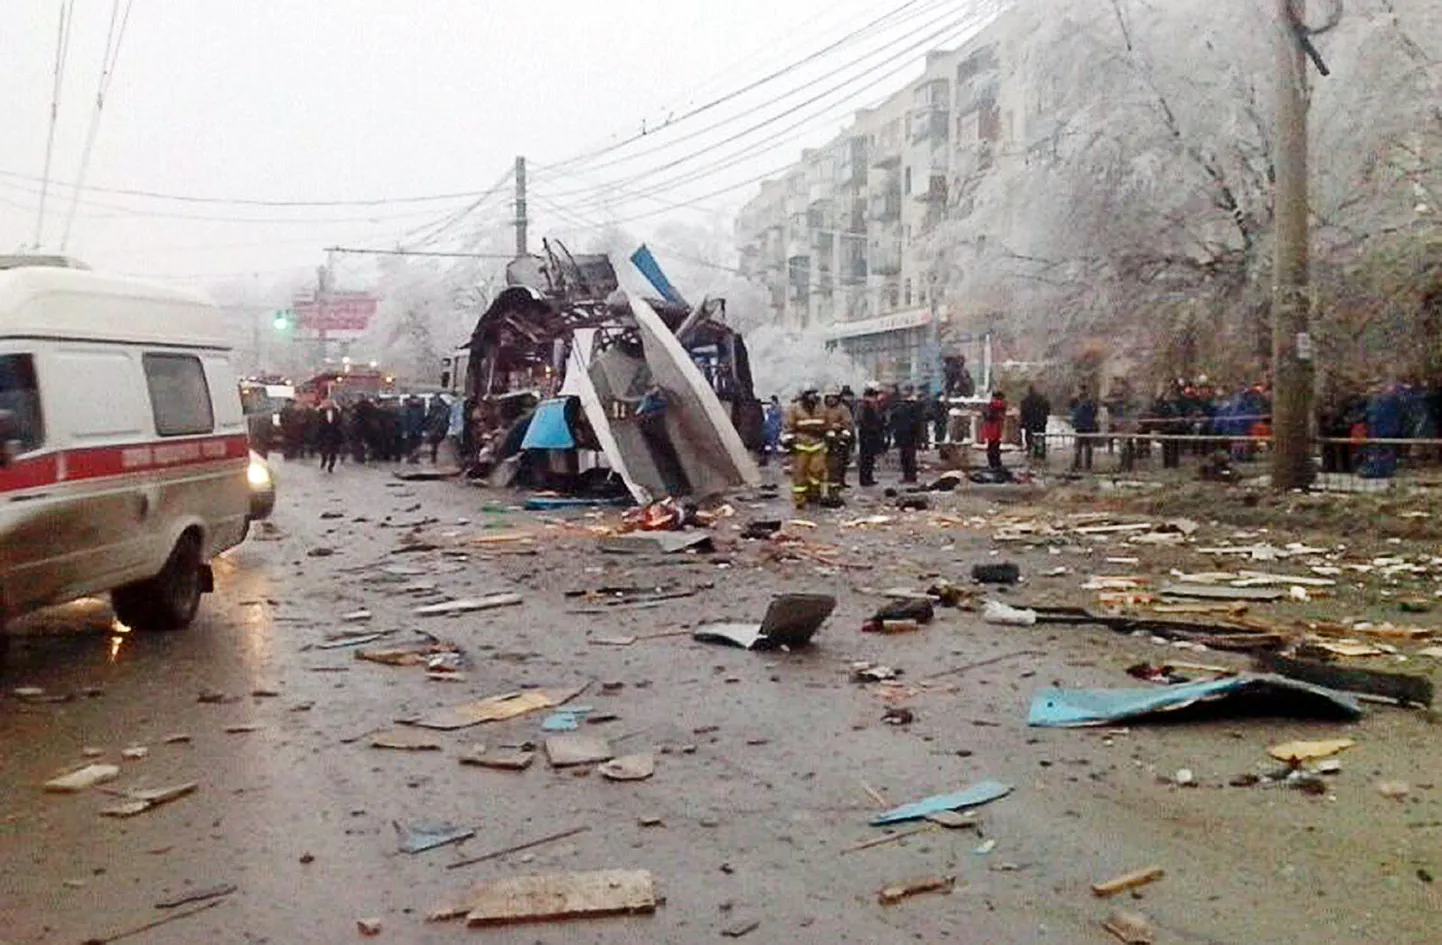 Volgogradi trollis plahvatas eile lõhkekeha hommikusel tipptunnil, mil sõiduk oli inimesi täis.